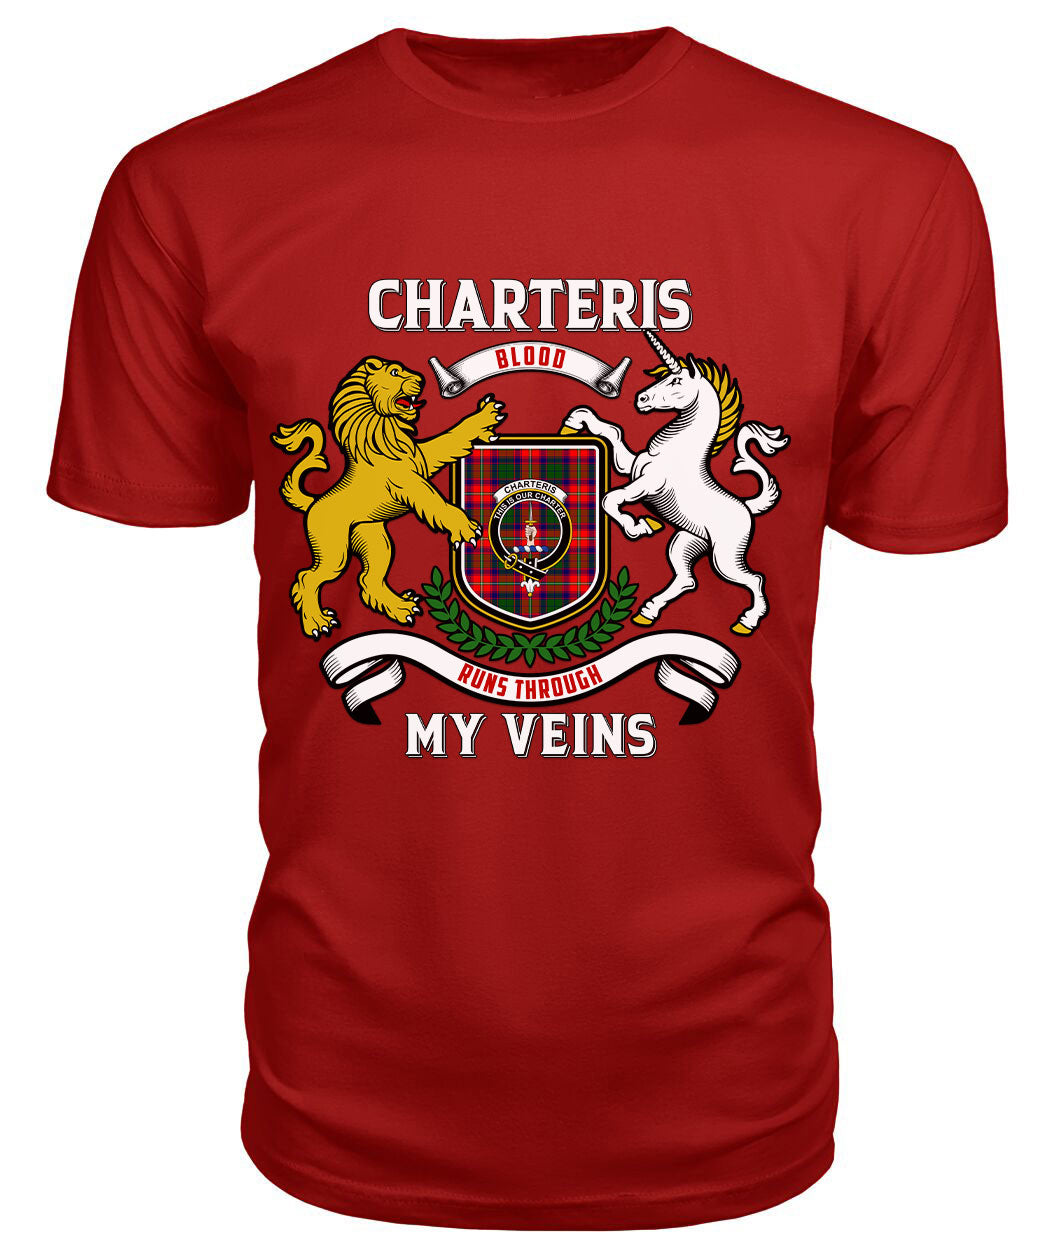 Charteris (Earl of Wemyss) Tartan Crest 2D T-shirt - Blood Runs Through My Veins Style